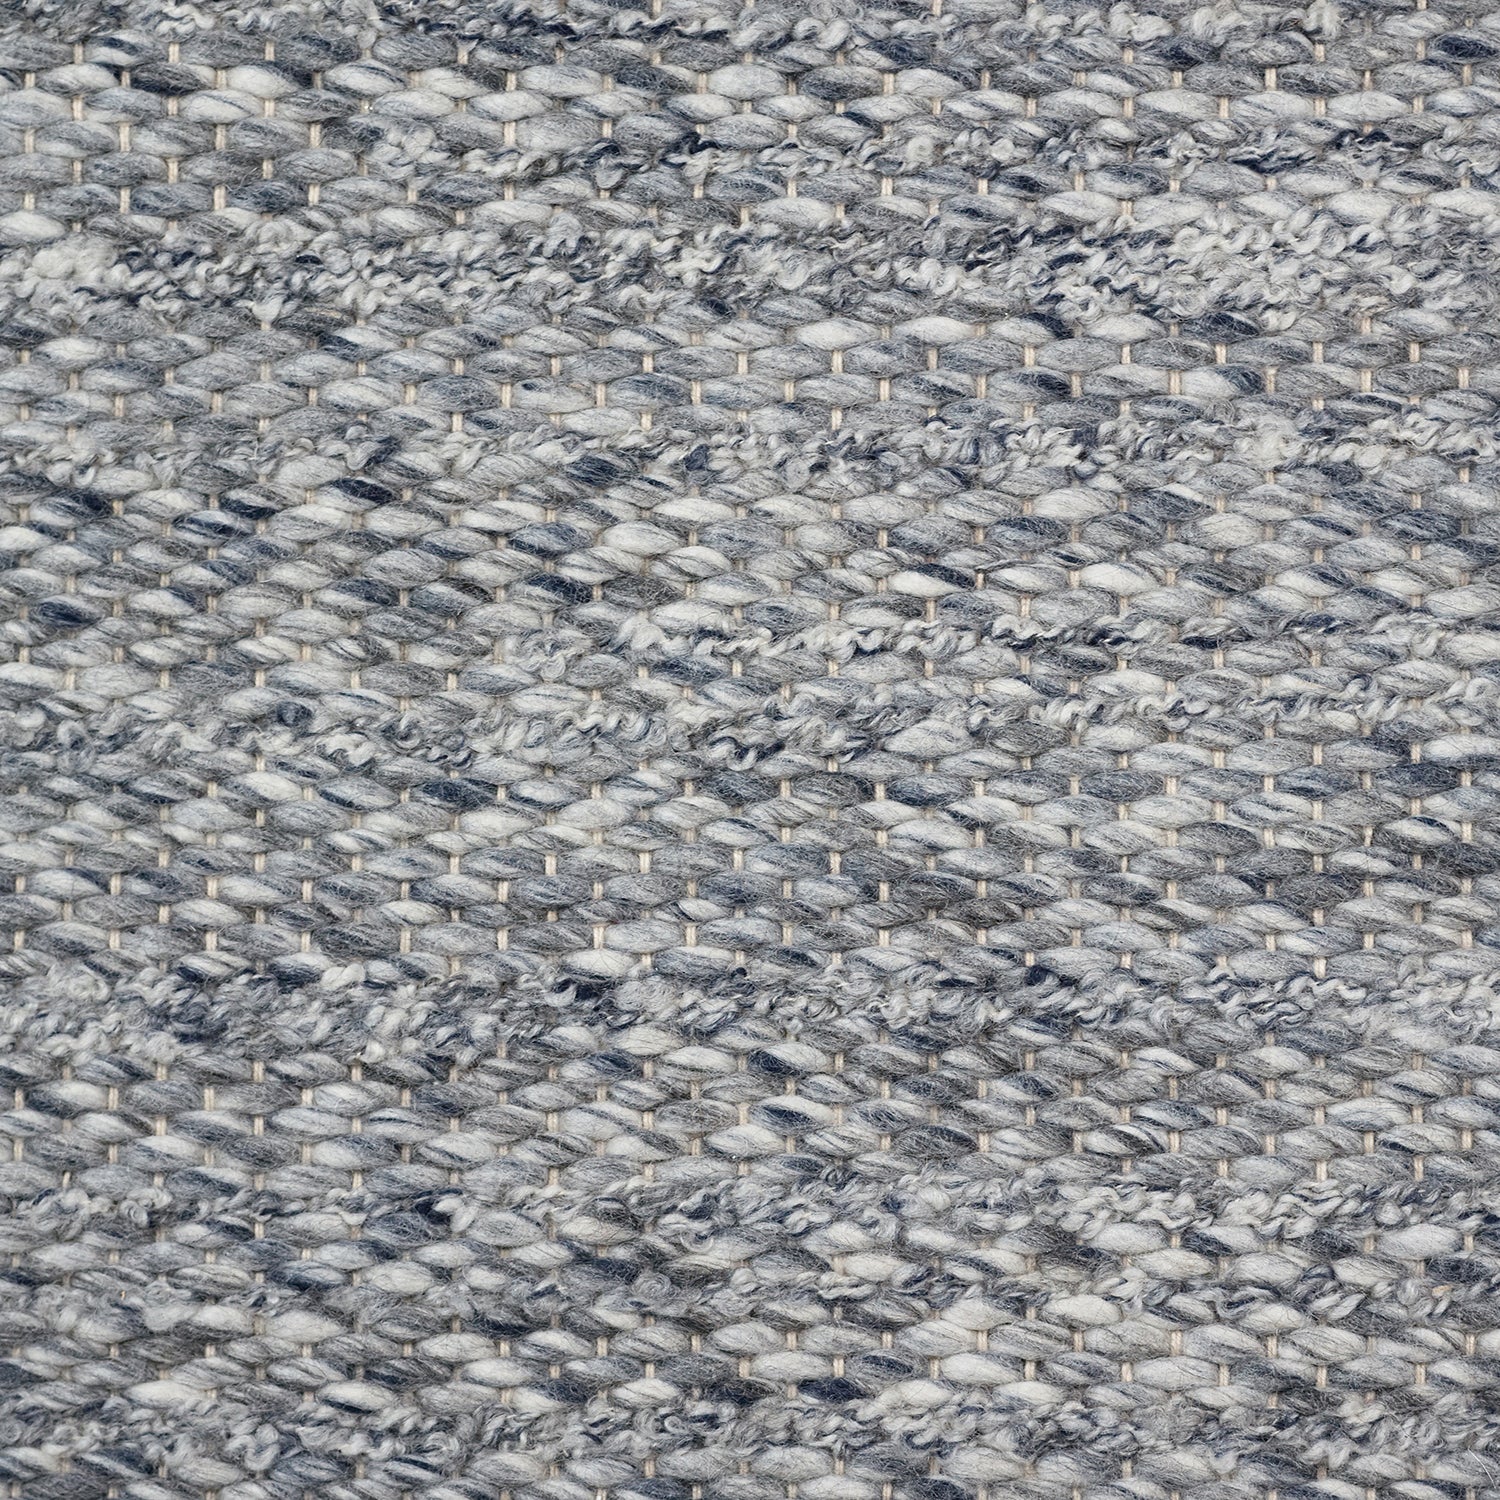 Wool broadloom carpet swatch in a textured stripe weave in mottled blue.